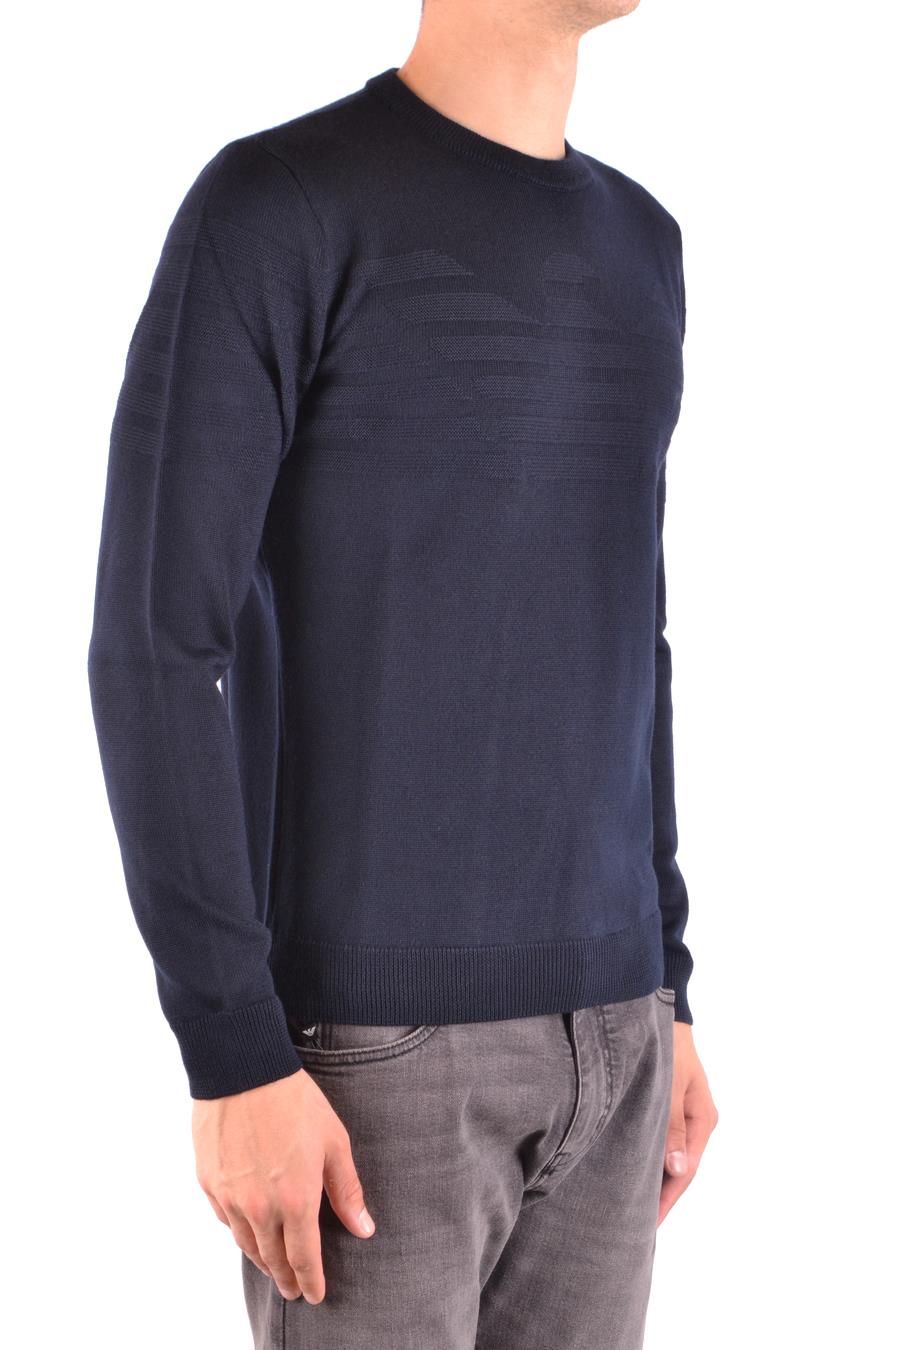 EMPORIO ARMANI Sweaters | ViganoBoutique.com